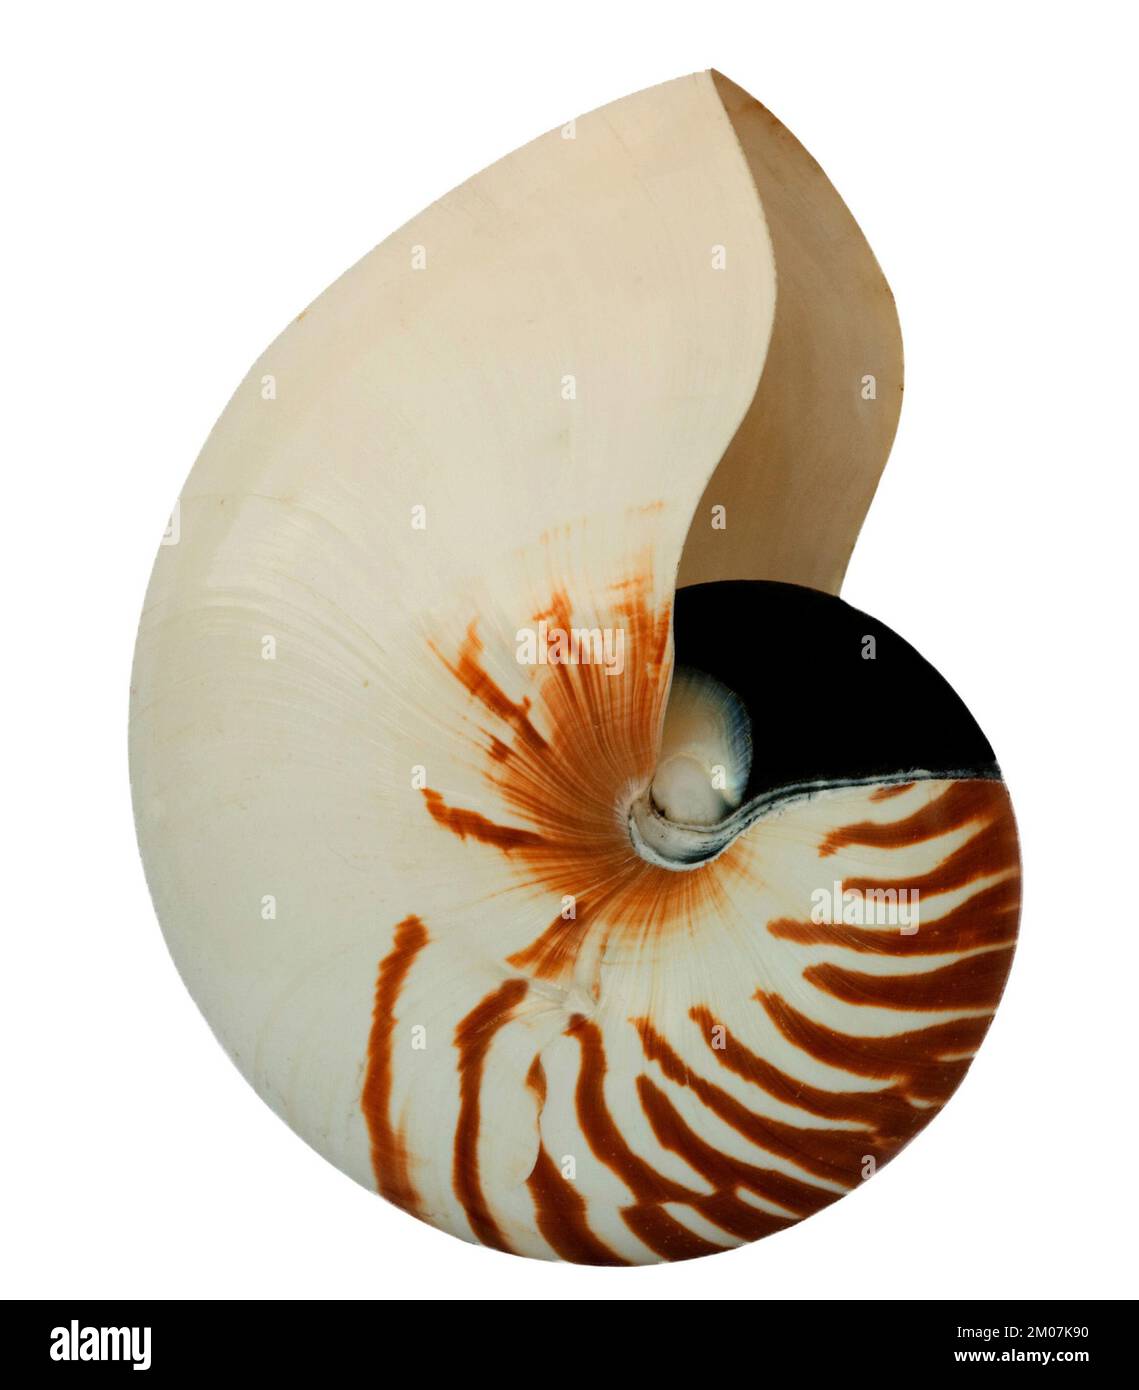 nautilus isolated on whithe background Stock Photo